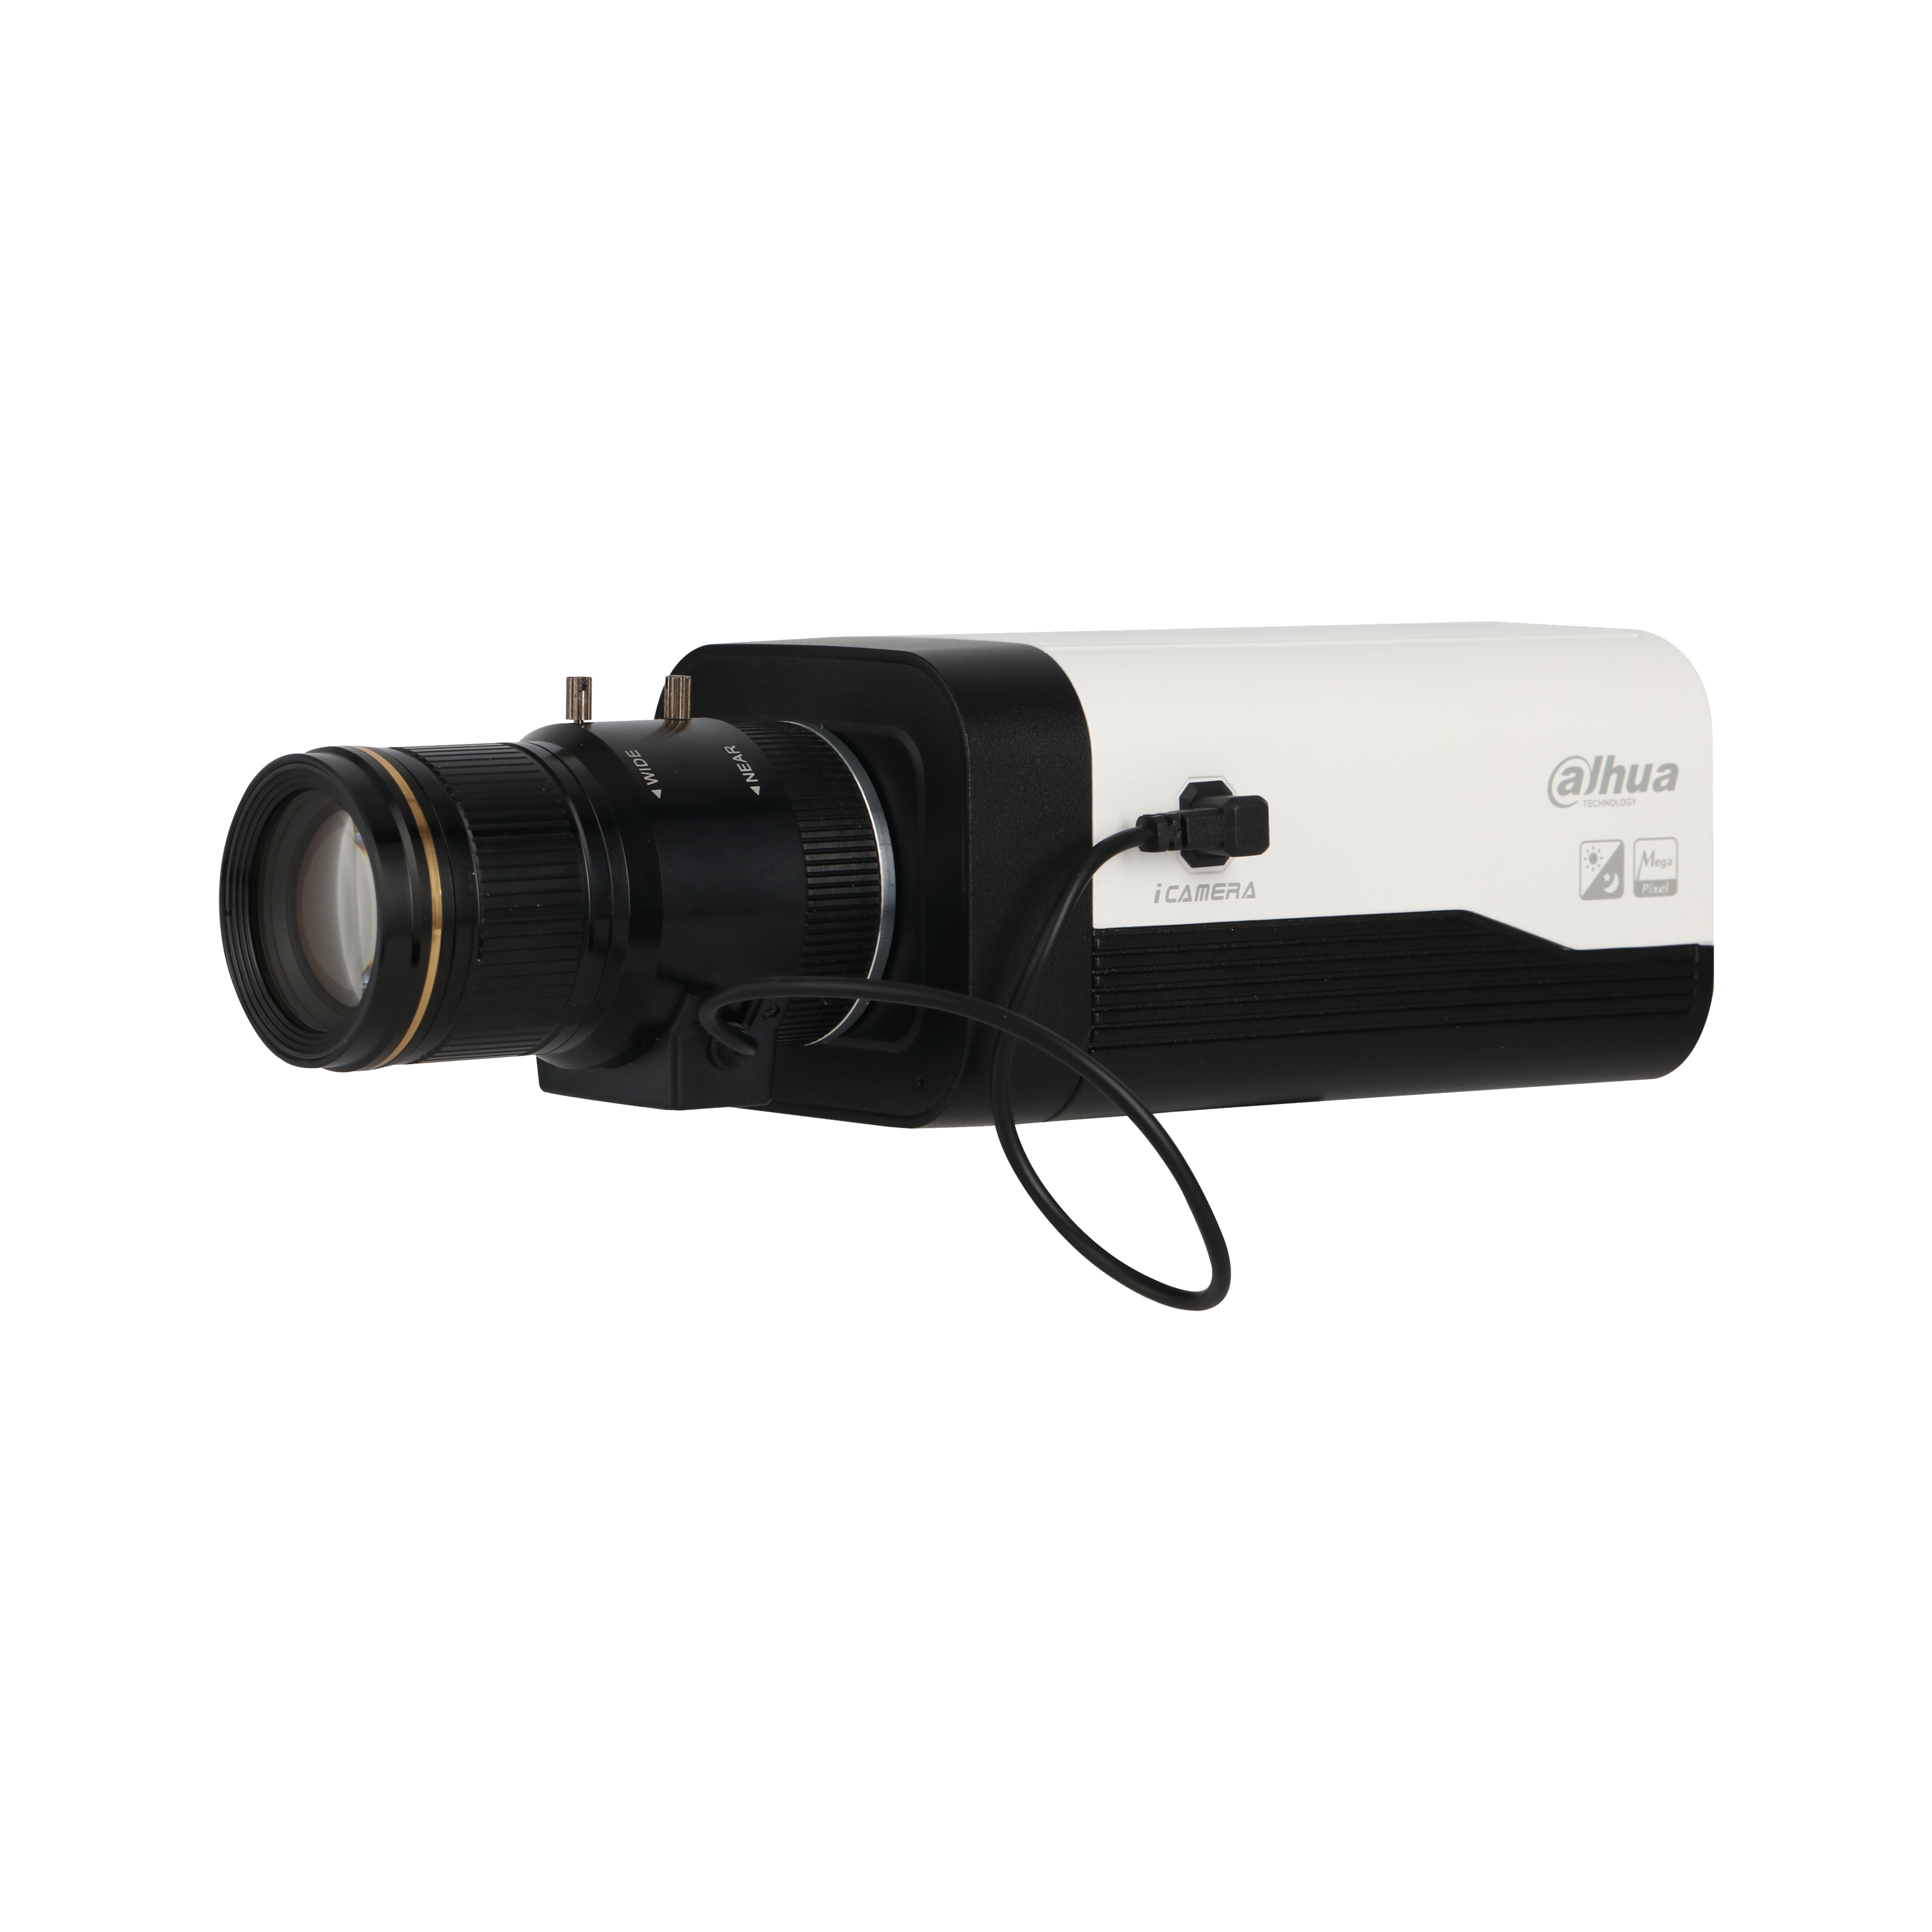 DAHUA IPC-HF8232F-E 2MP Starlight Box Network Camera